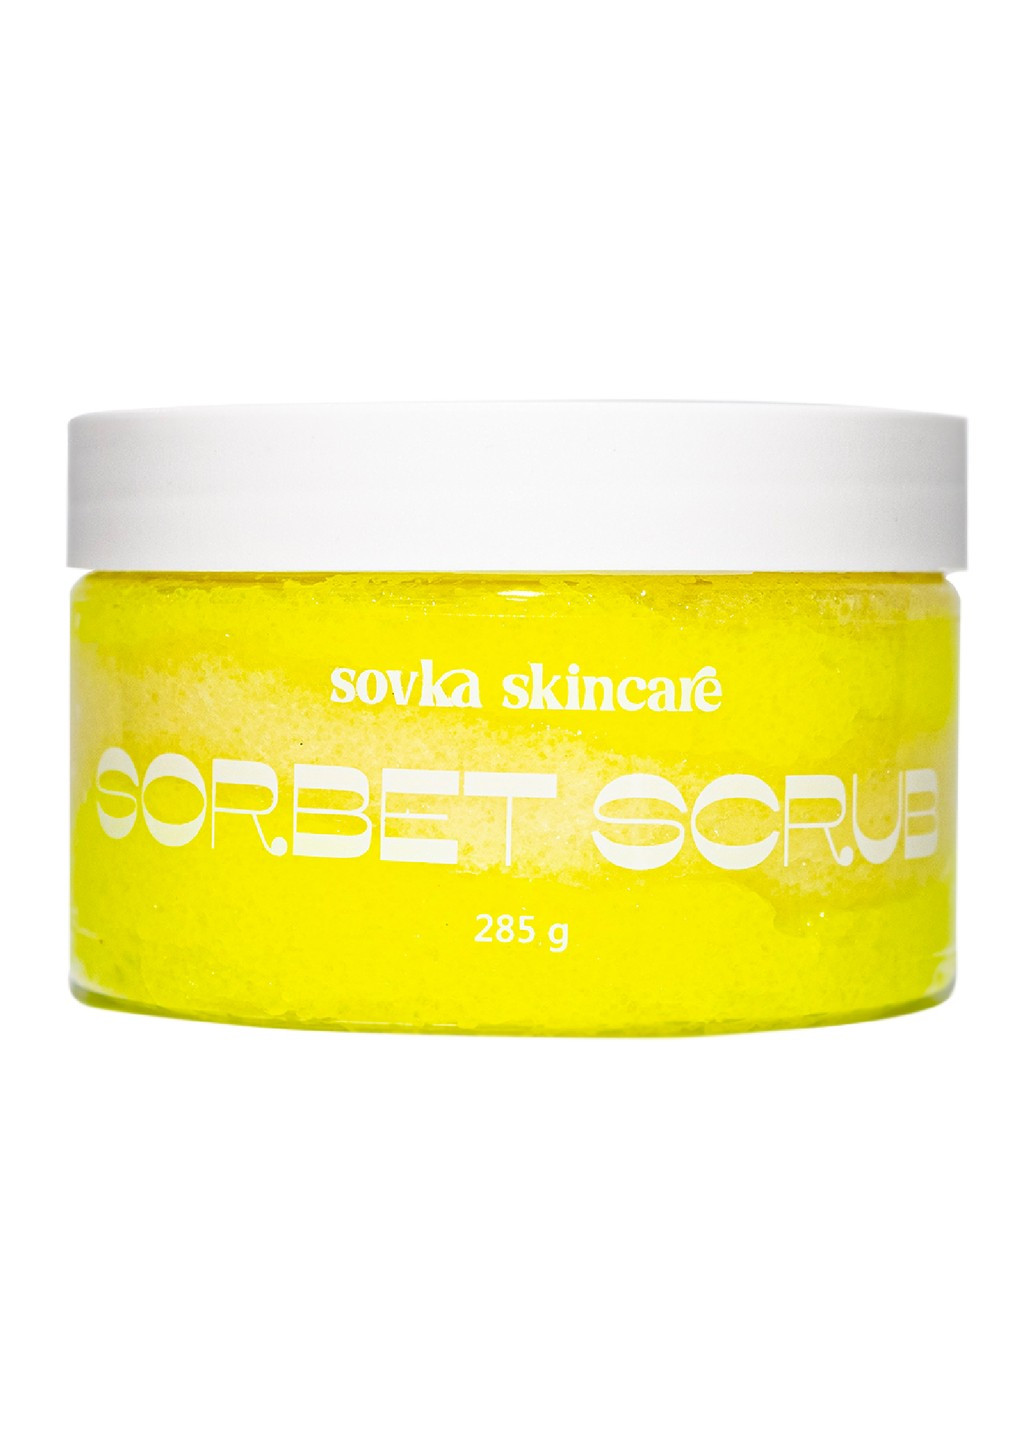 Скраб для тела Sorbet Scrub Milk Shake 285 г Sovka Skincare (254197177)